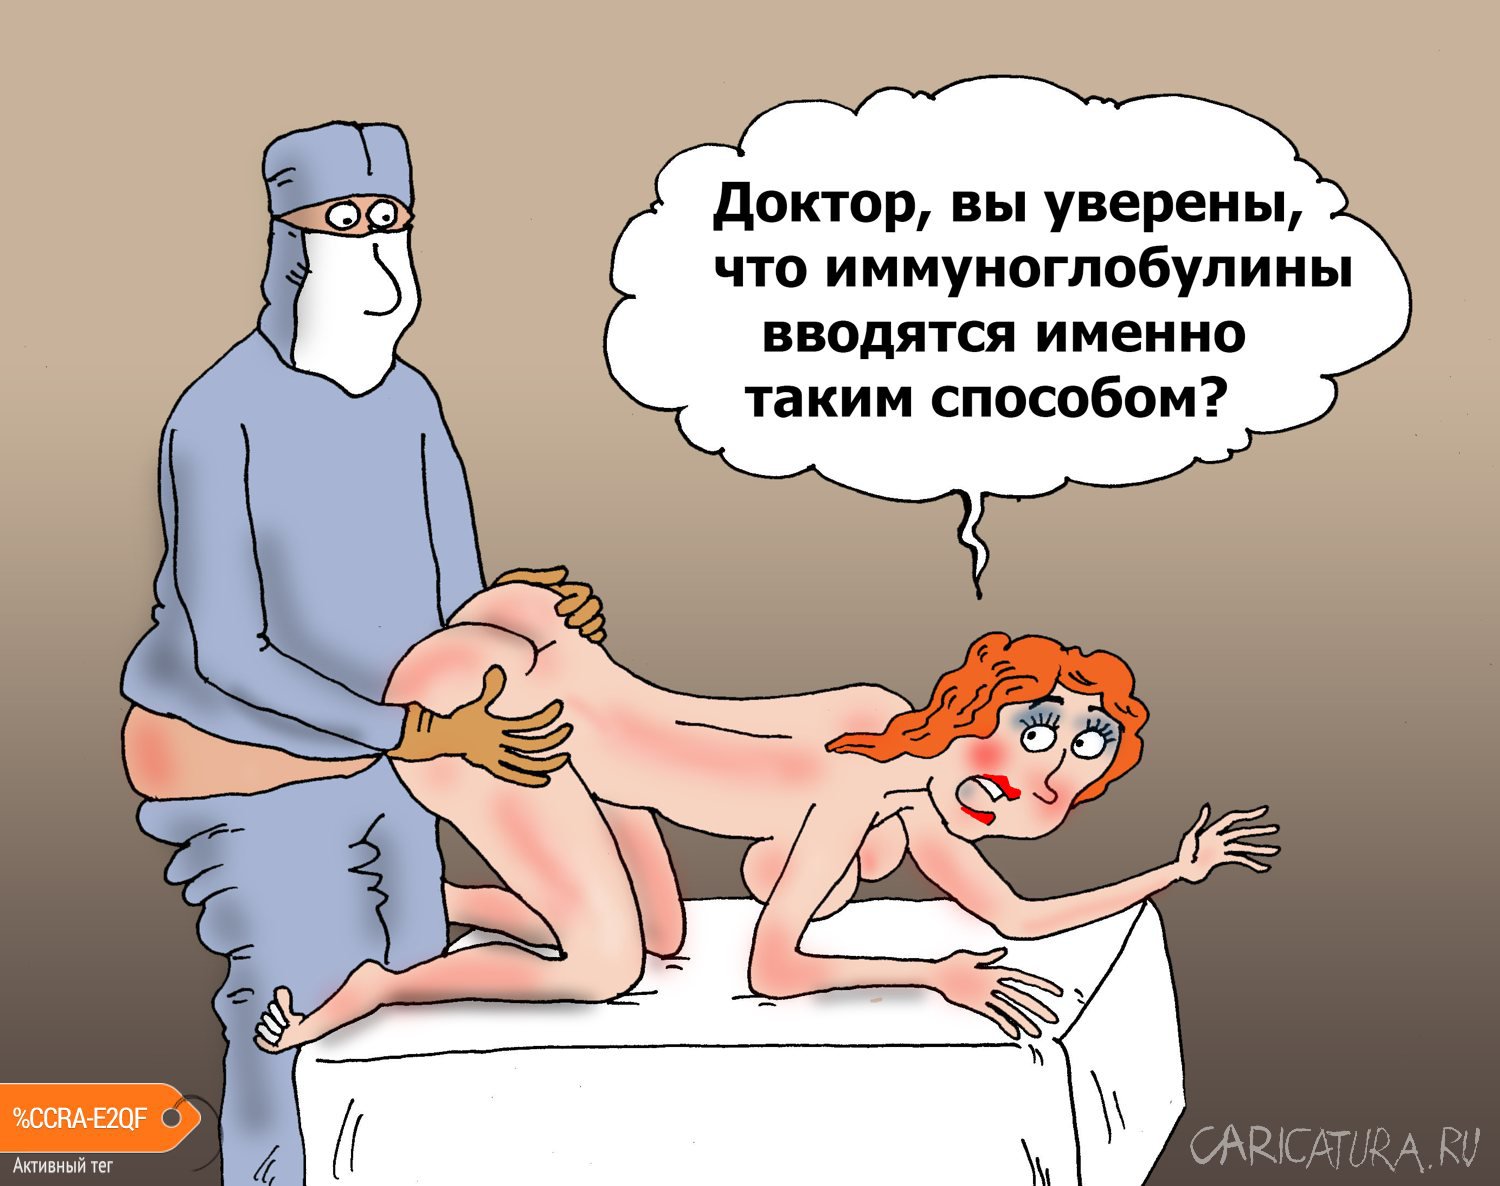 Карикатура "Прививка для блондинки", Валерий Тарасенко